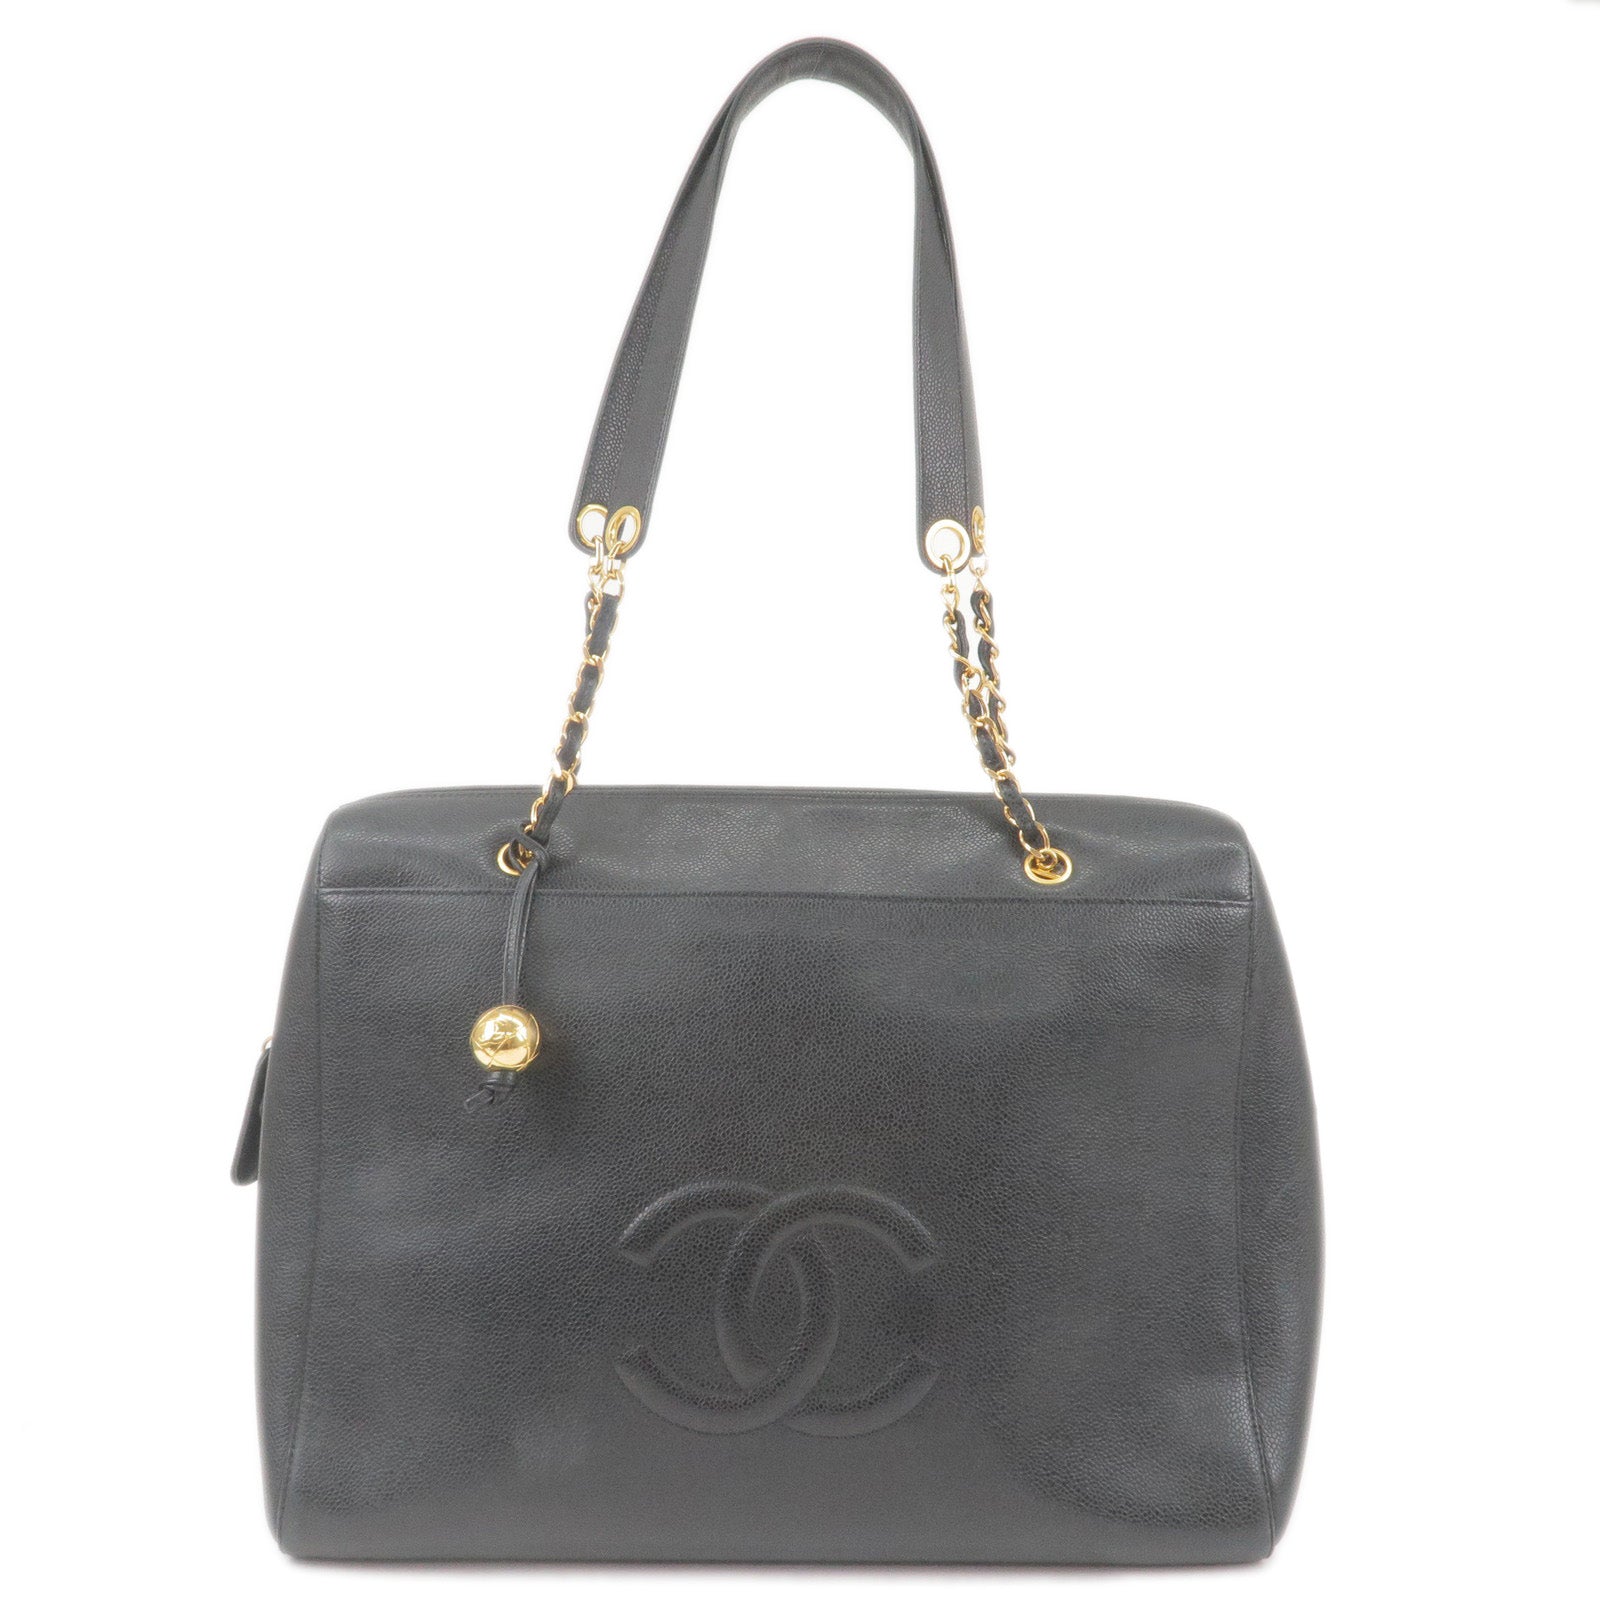 Chanel Vintage Handbag Black Gold Hw